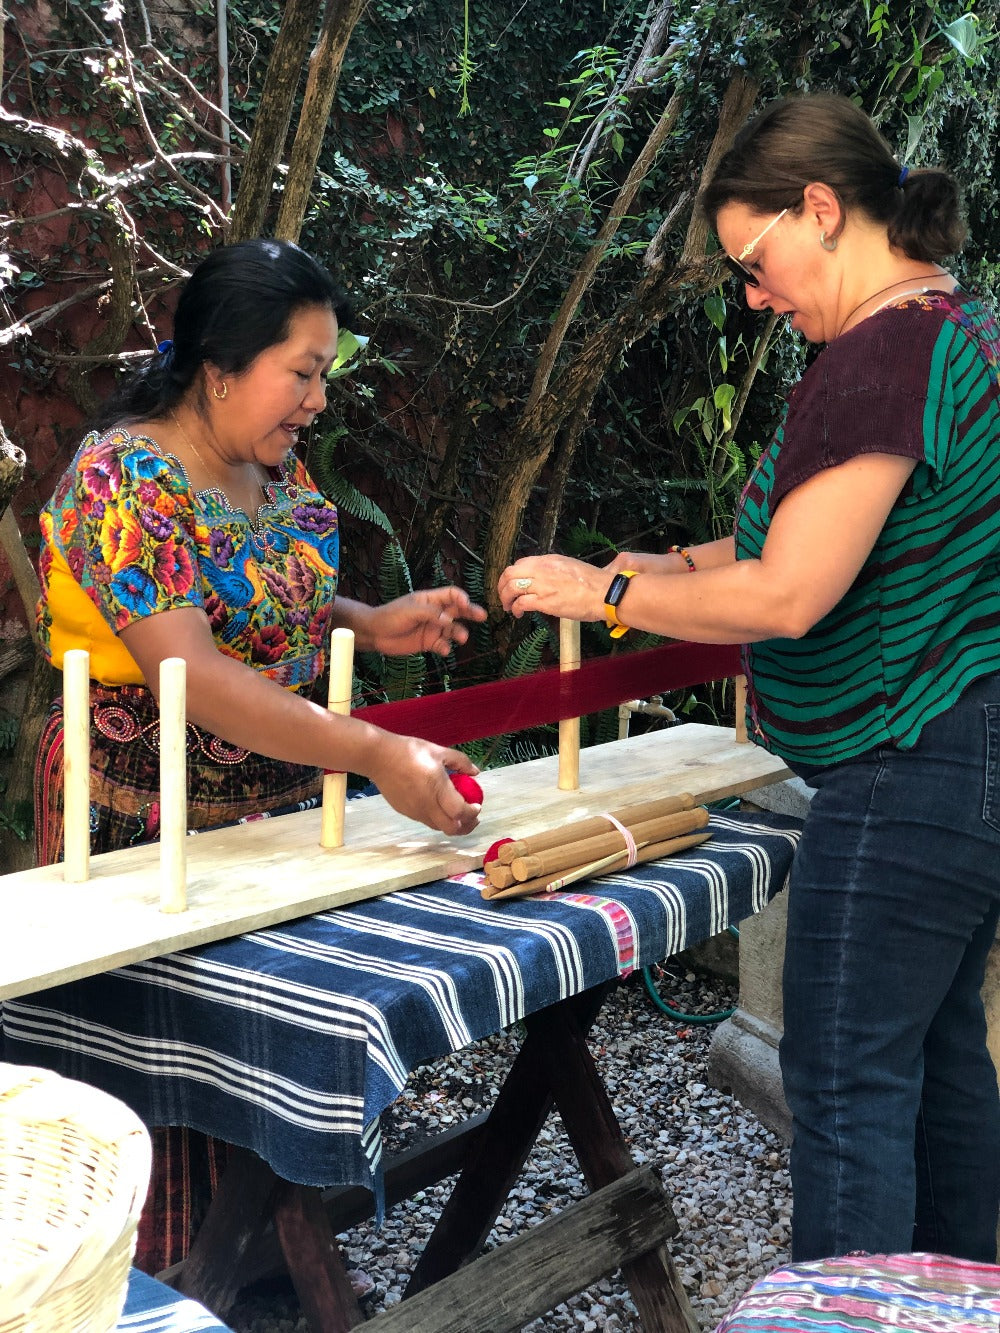 Deposit for Weaving & Culture during Semana Santa, April 12 - 20, 2025